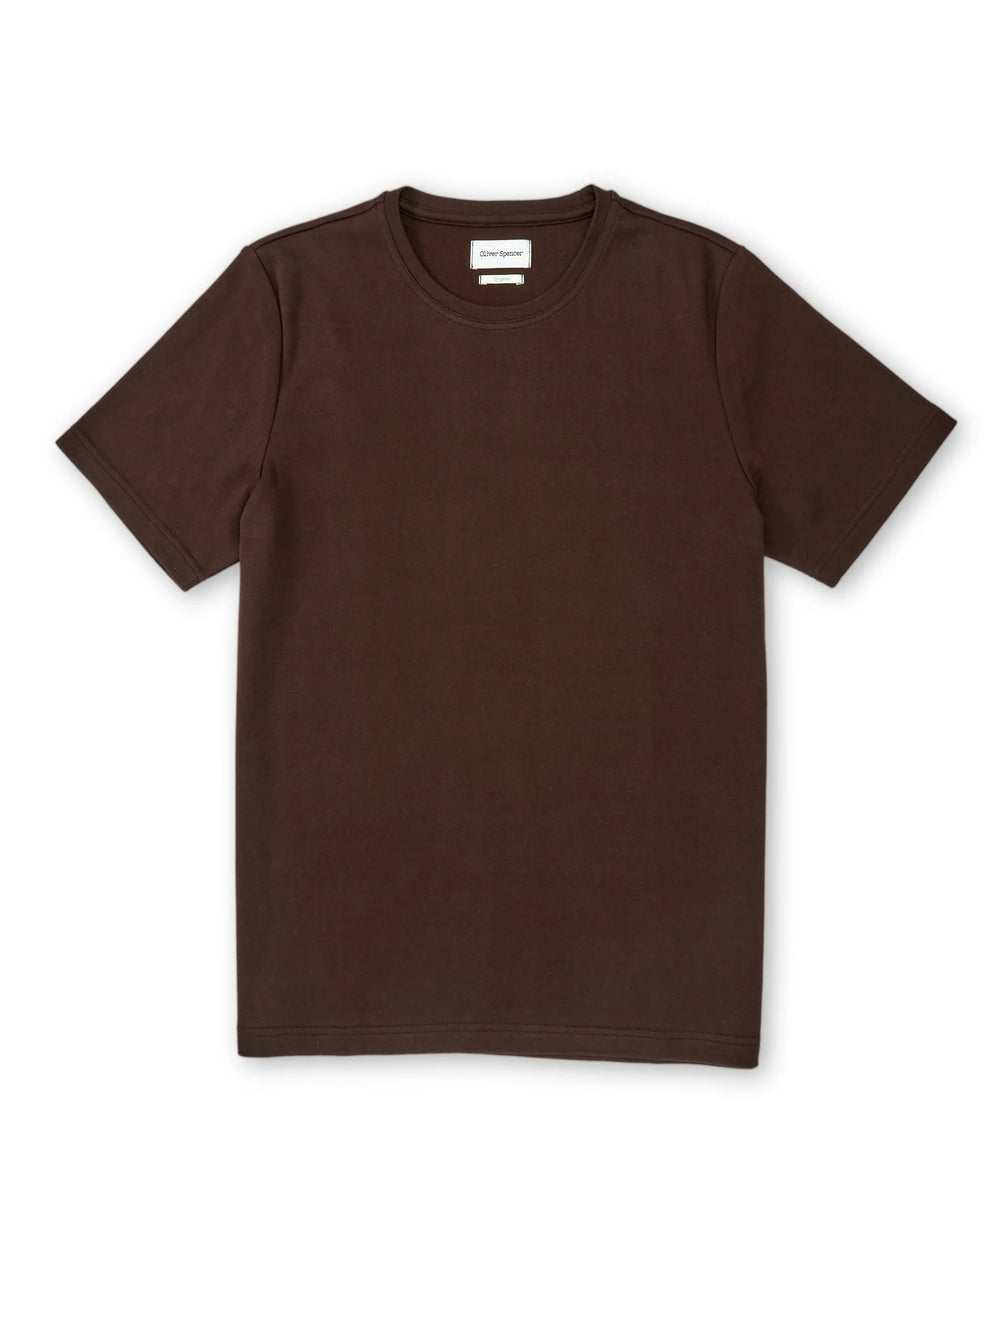 Heavy T-Shirt - Chocolate Brown